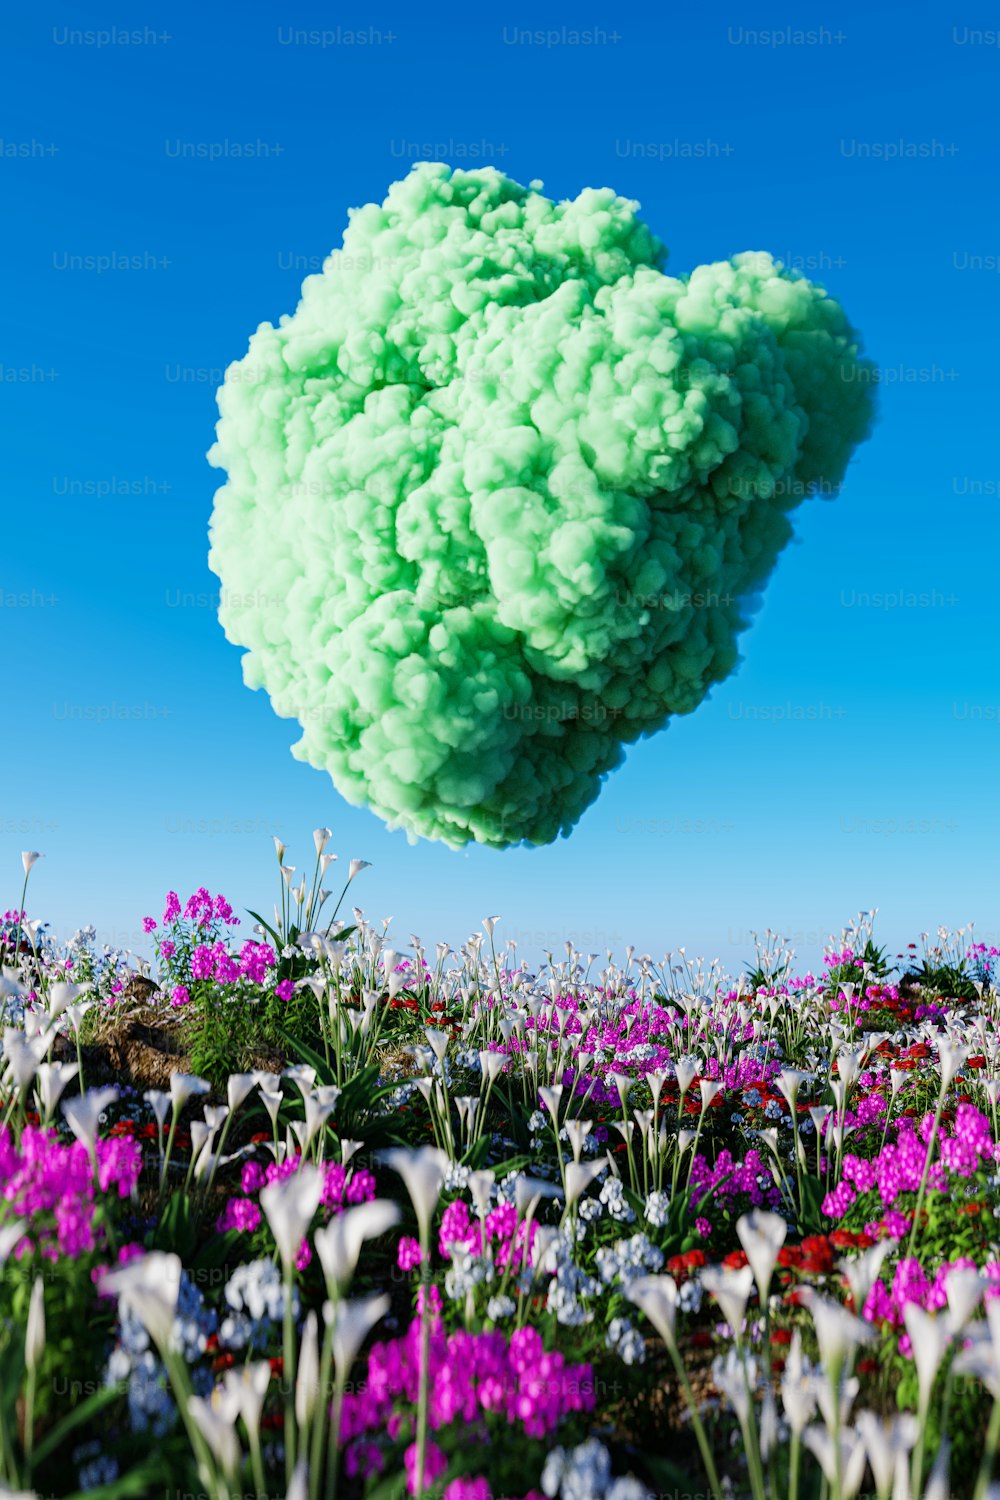 공중에 떠 있는 녹색과 보라색 꽃 구름